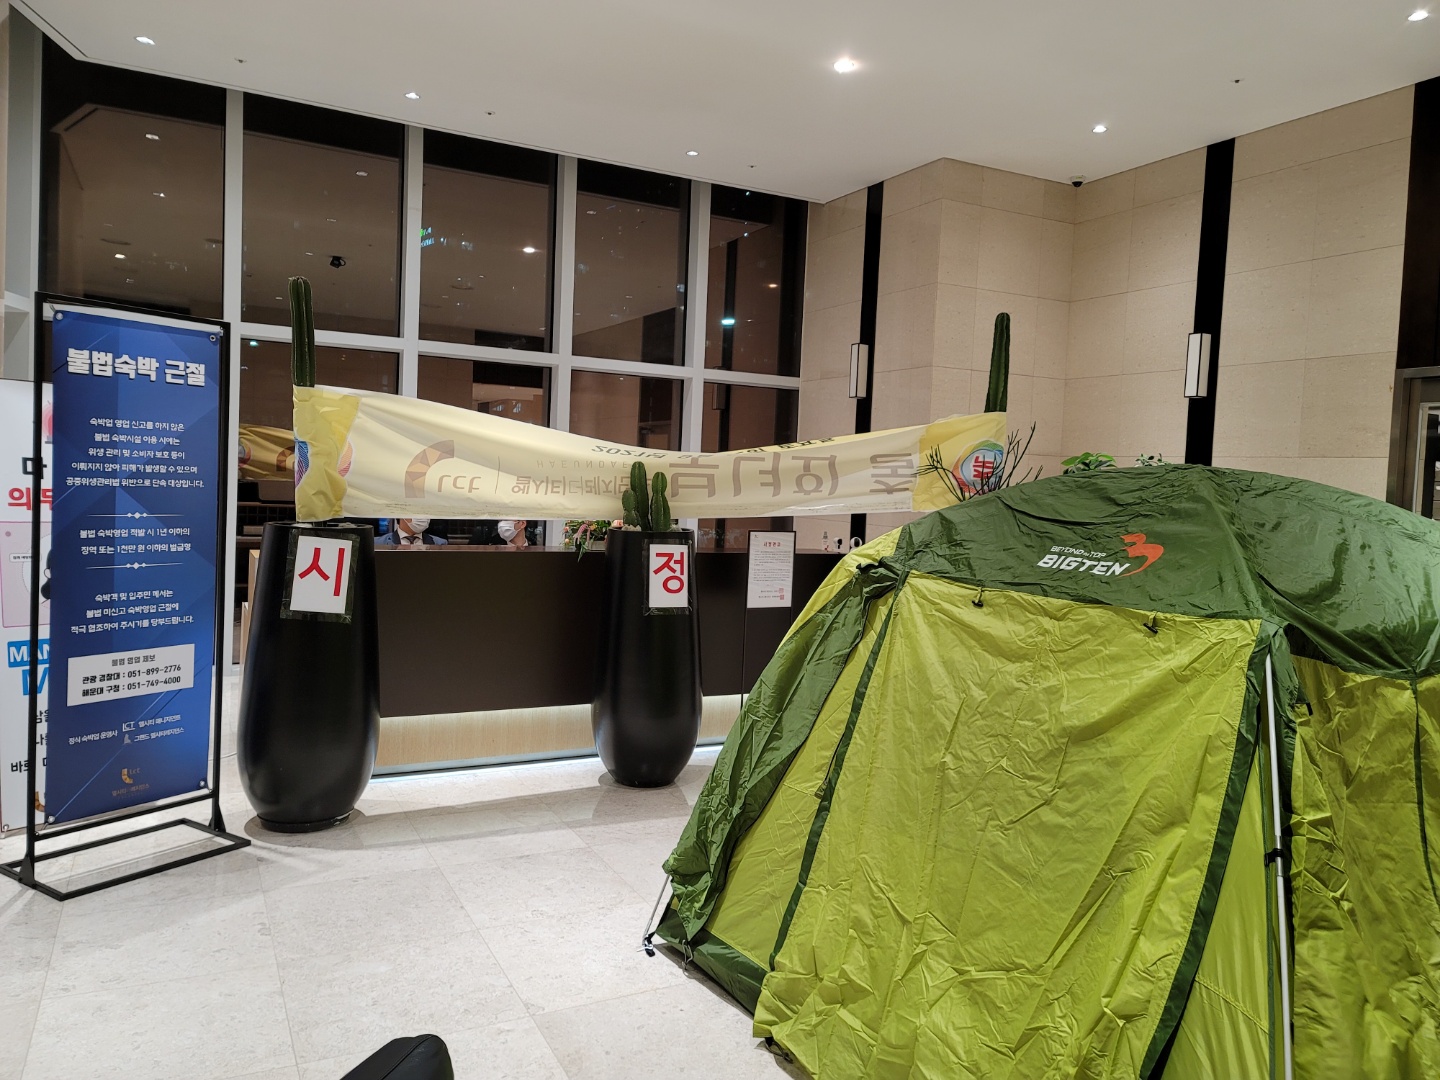 해운대 초고층 건물인 엘시티 로비에 실거주 주민이 설치한 텐트가 설치되어있다. 그 뒤로는 숙박위탁업체가 설치한 안내데스크가 자리를 잡고 있다.